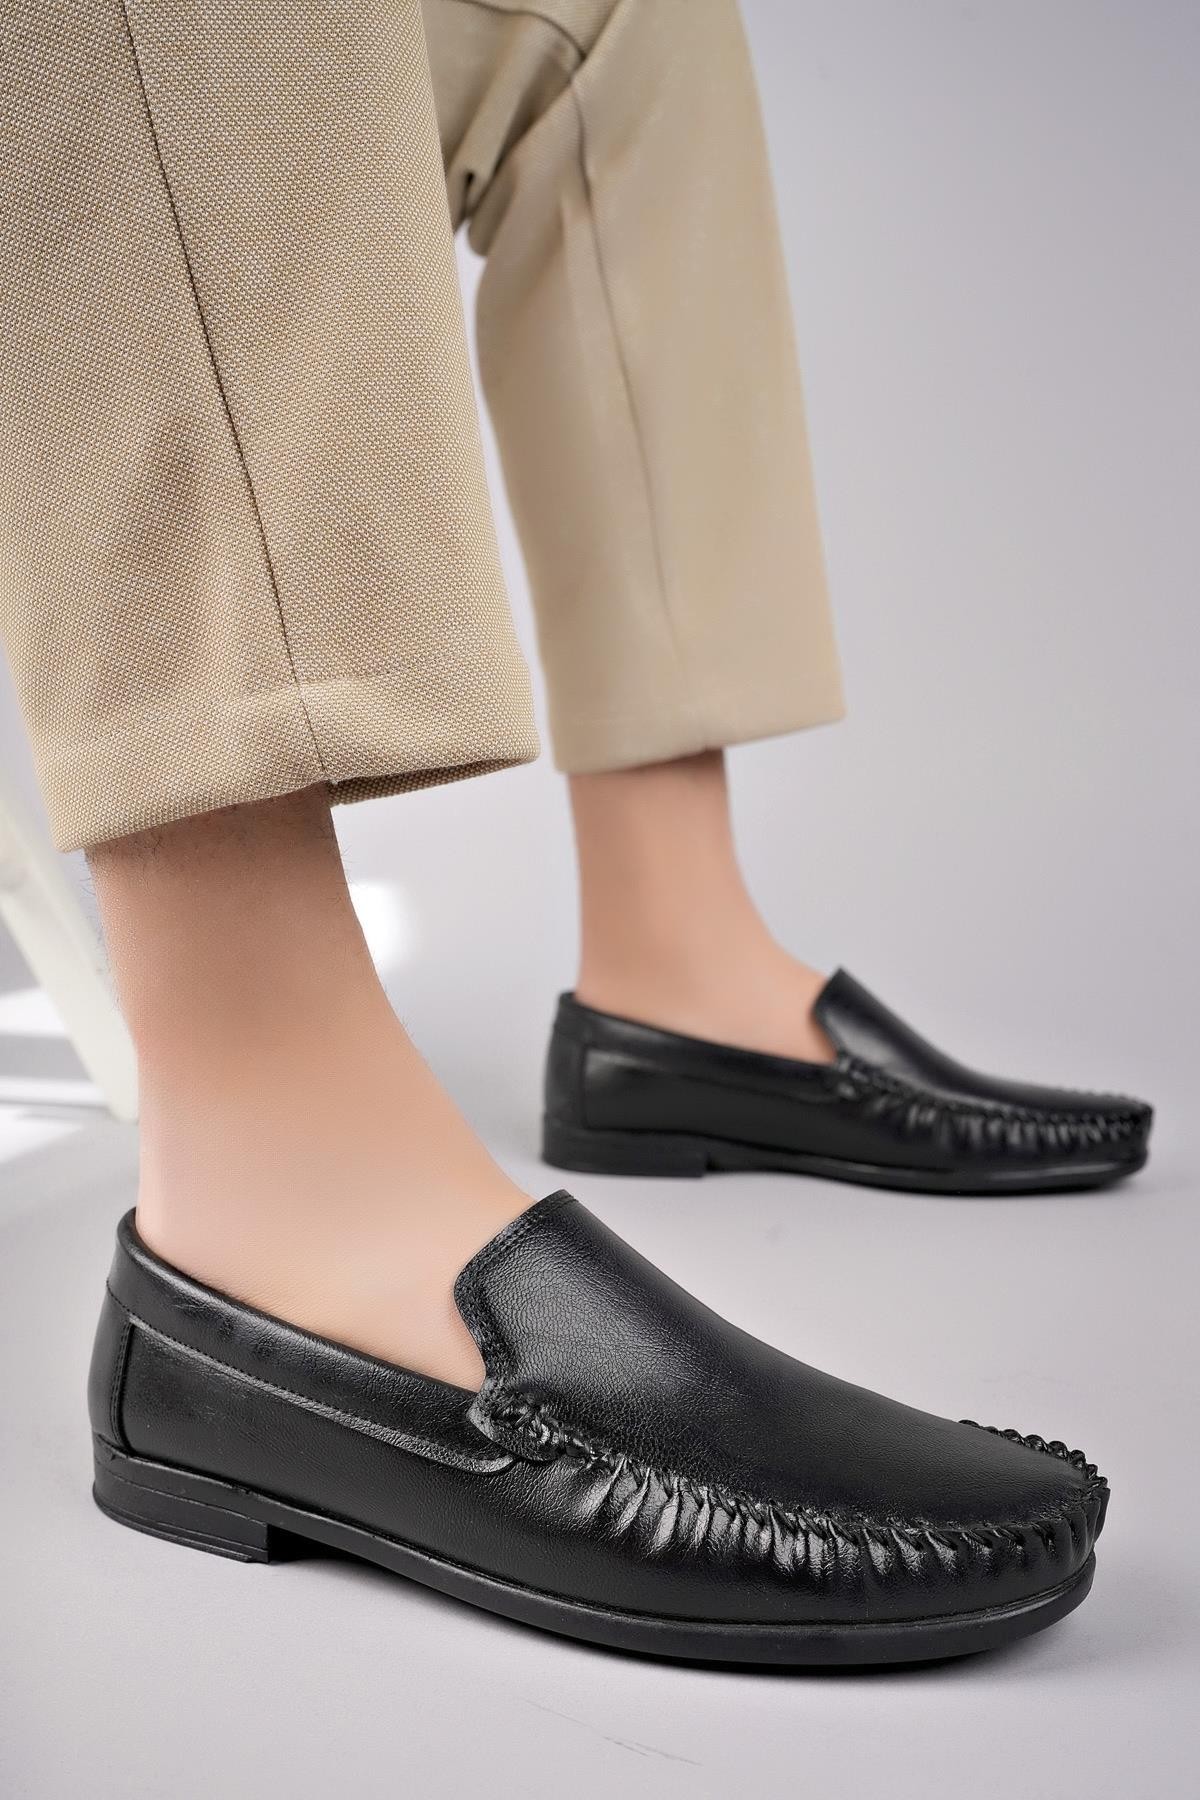 Muggo MARK Garantili Erkek Günlük Klasik Casual Rahat Ortopedik Ayakkabı